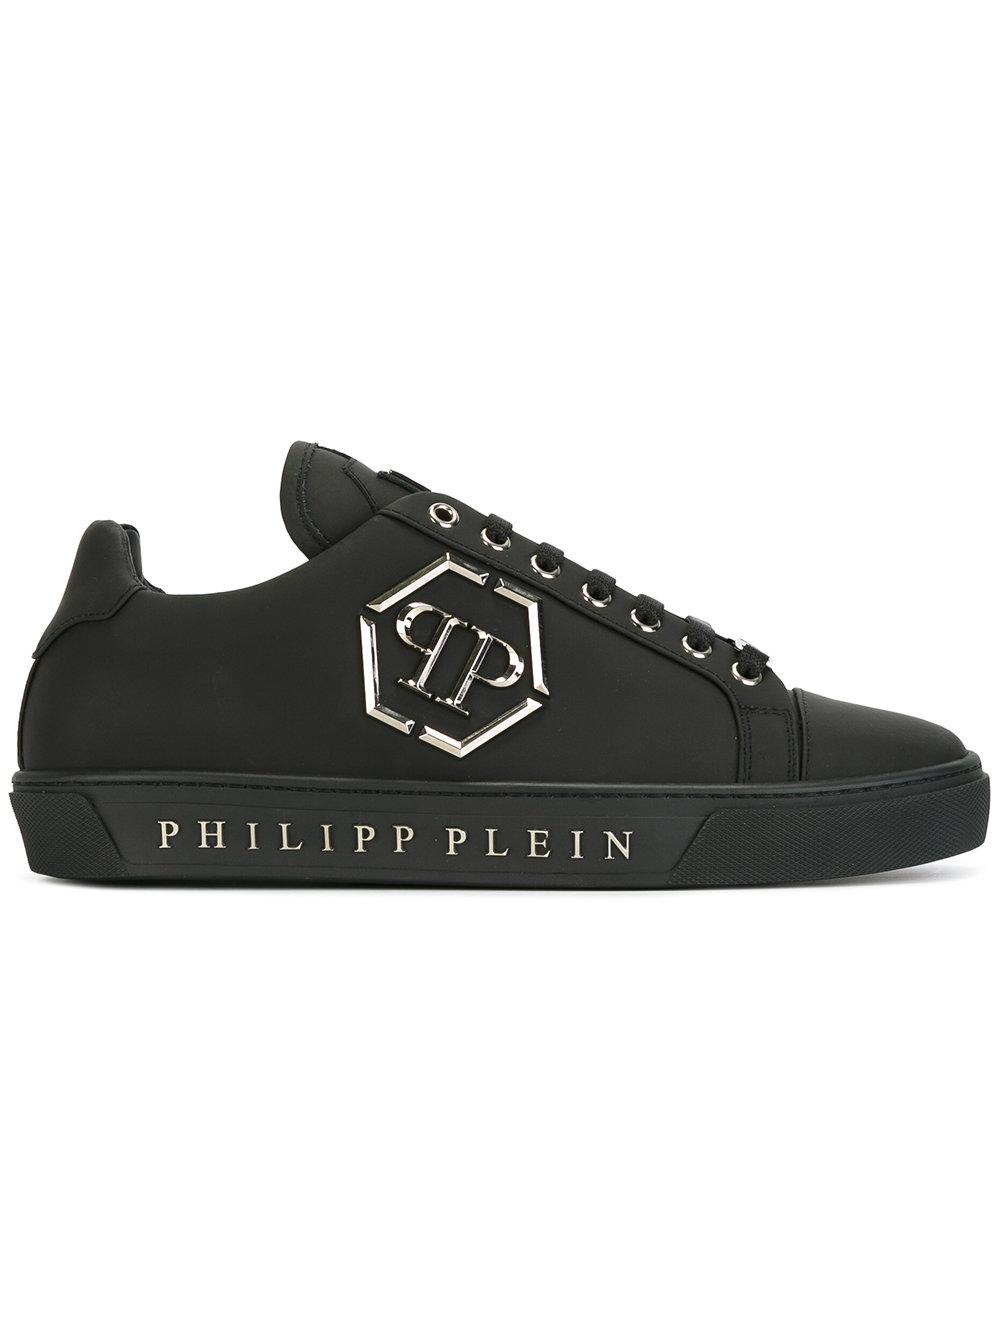 Lyst - Philipp Plein Queensland Sneakers in Black for Men